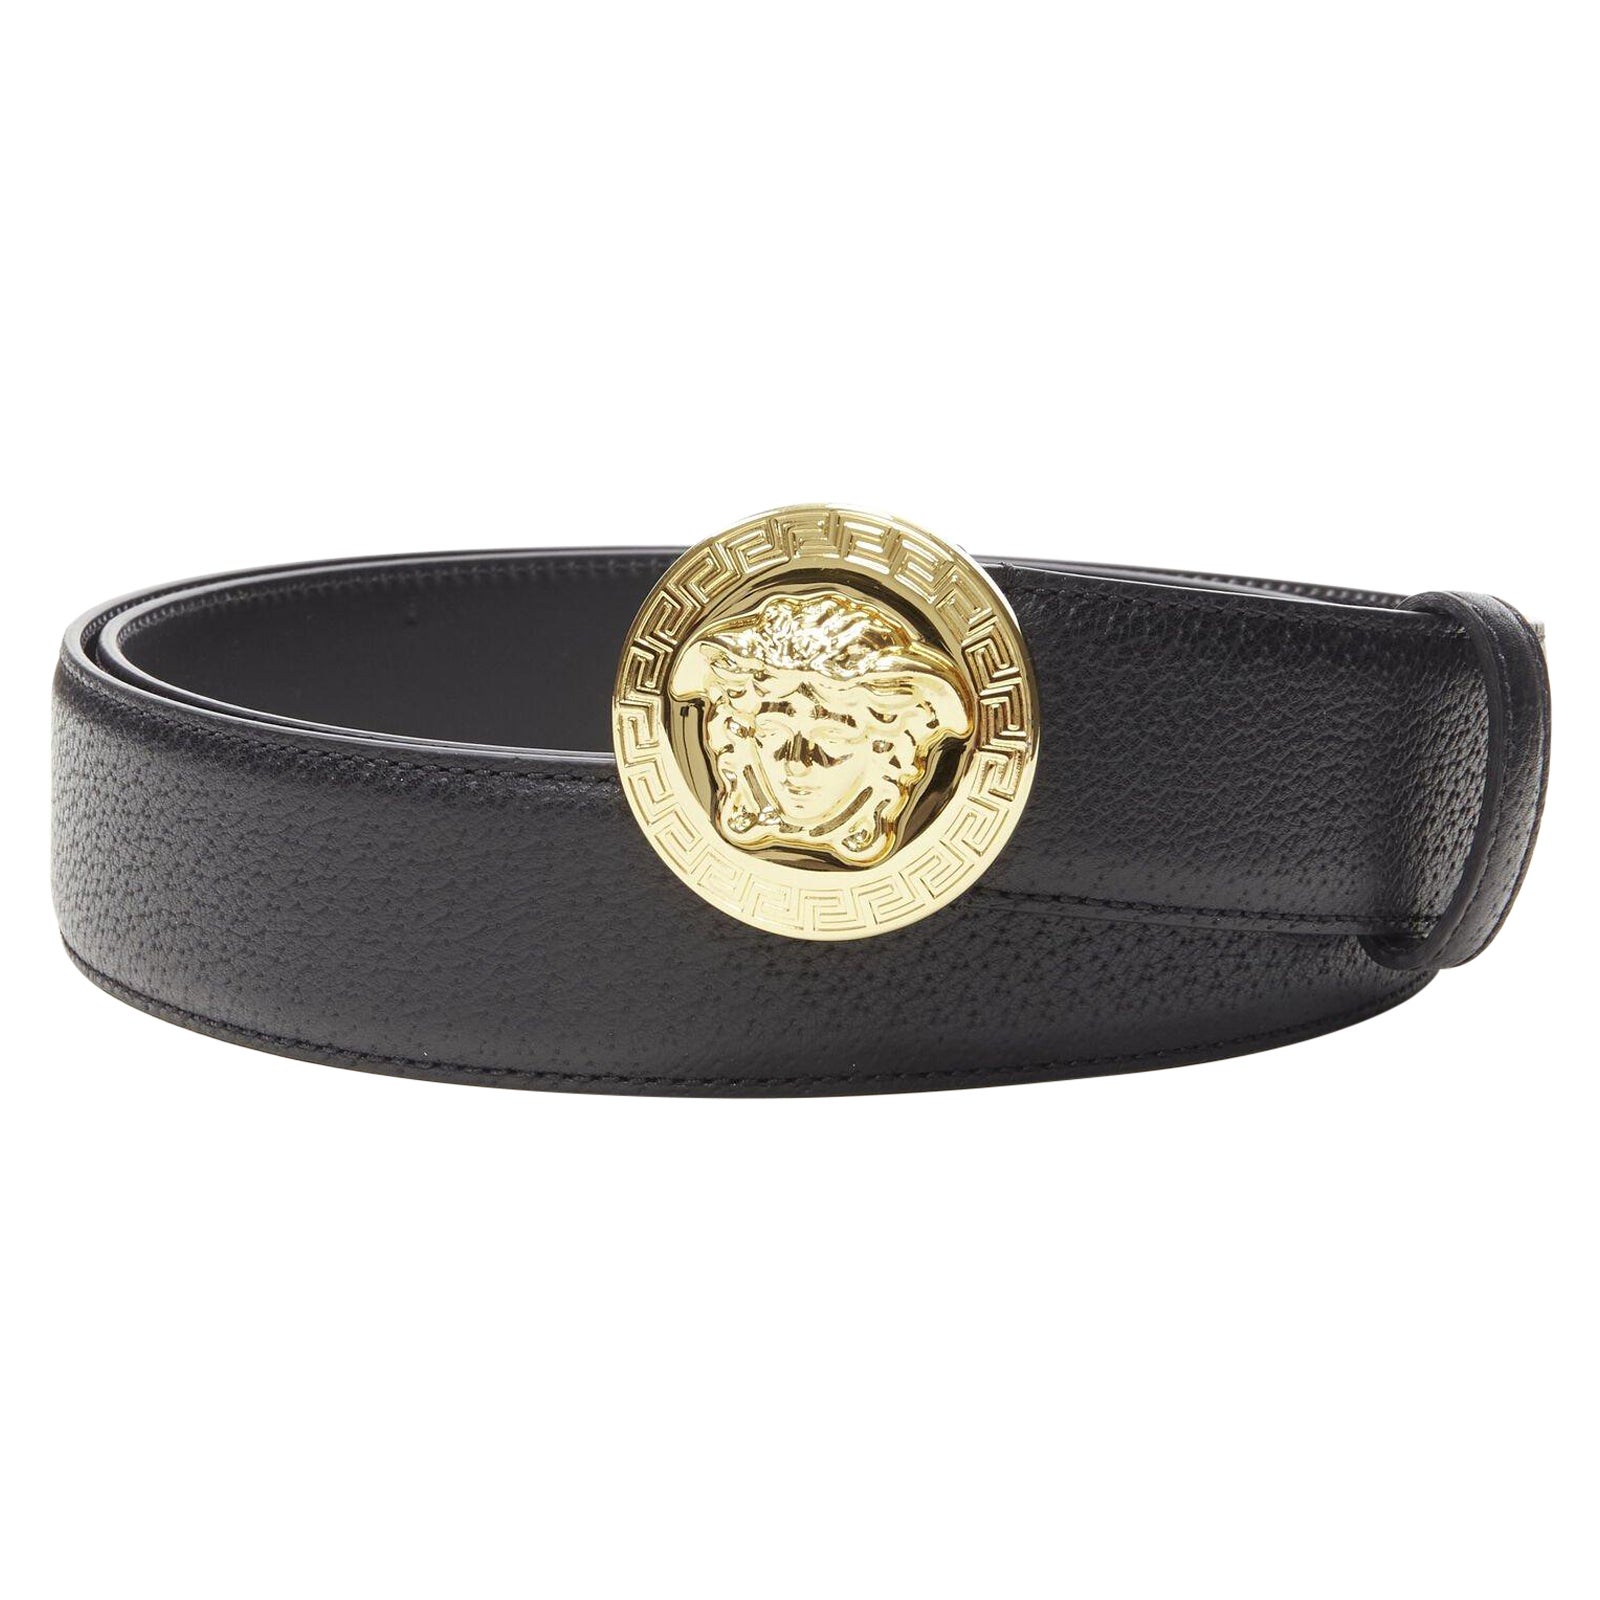 VERSACE Medusa Medallion Coin gold buckle black leather belt 115cm 44-48" For Sale